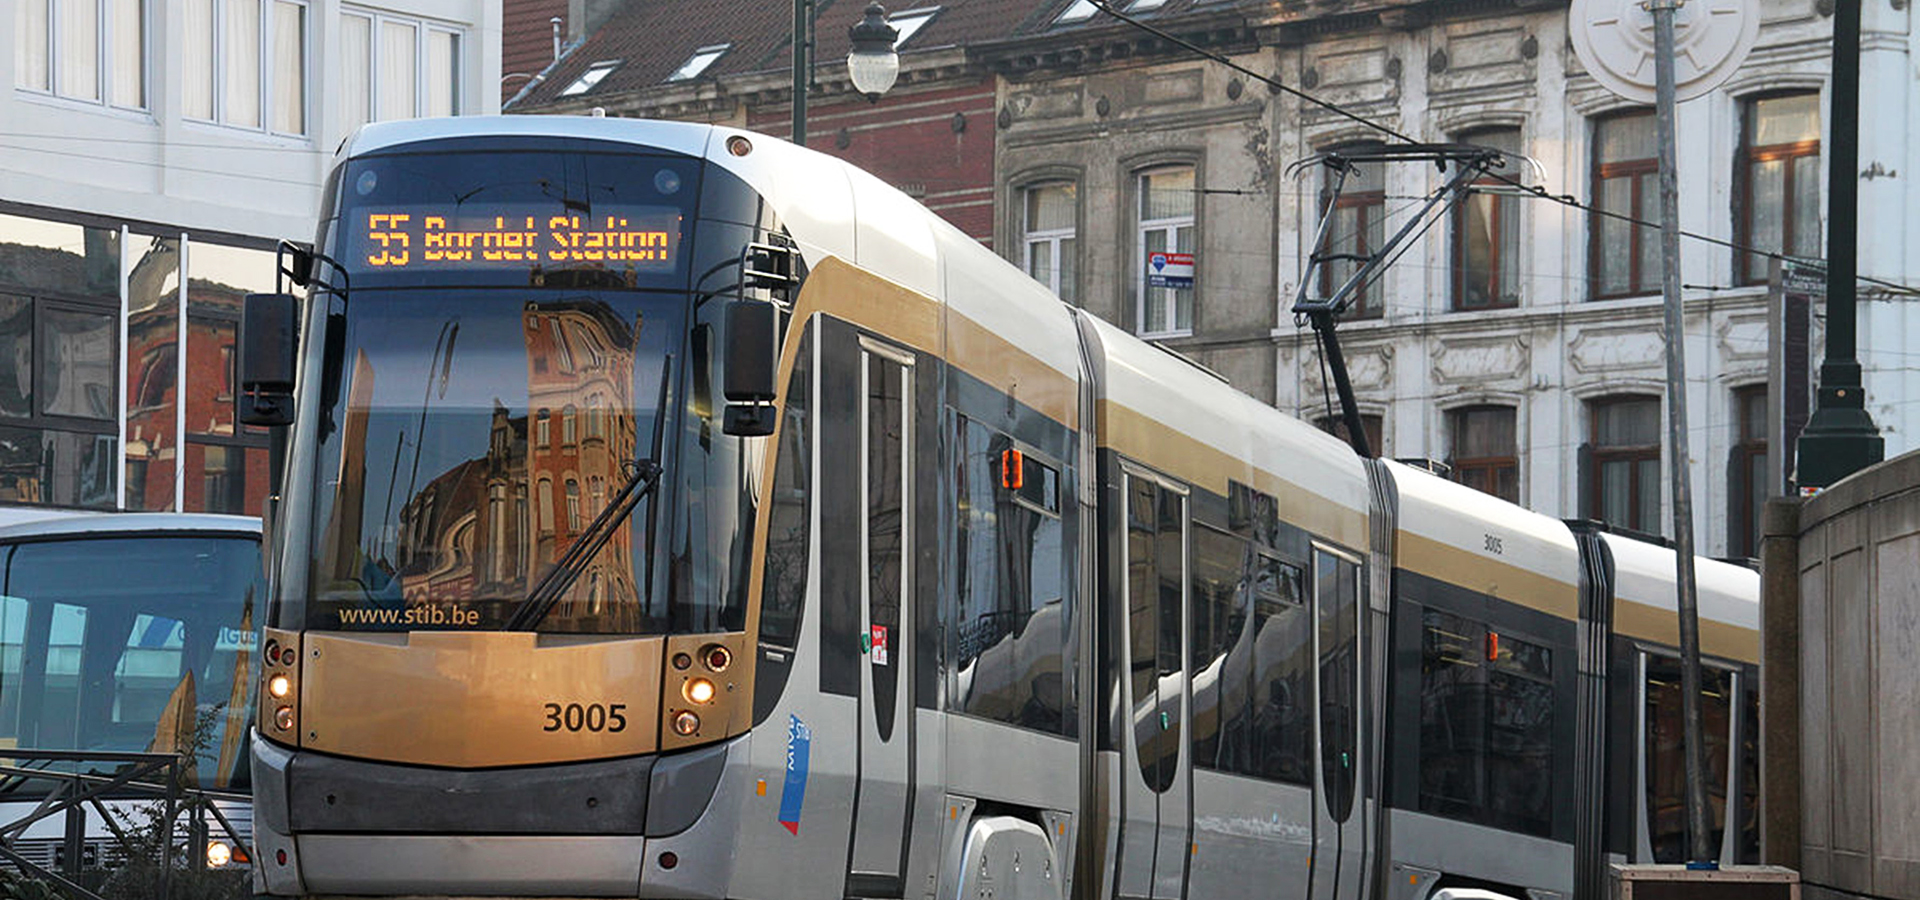 Brussels Tram, Belgium